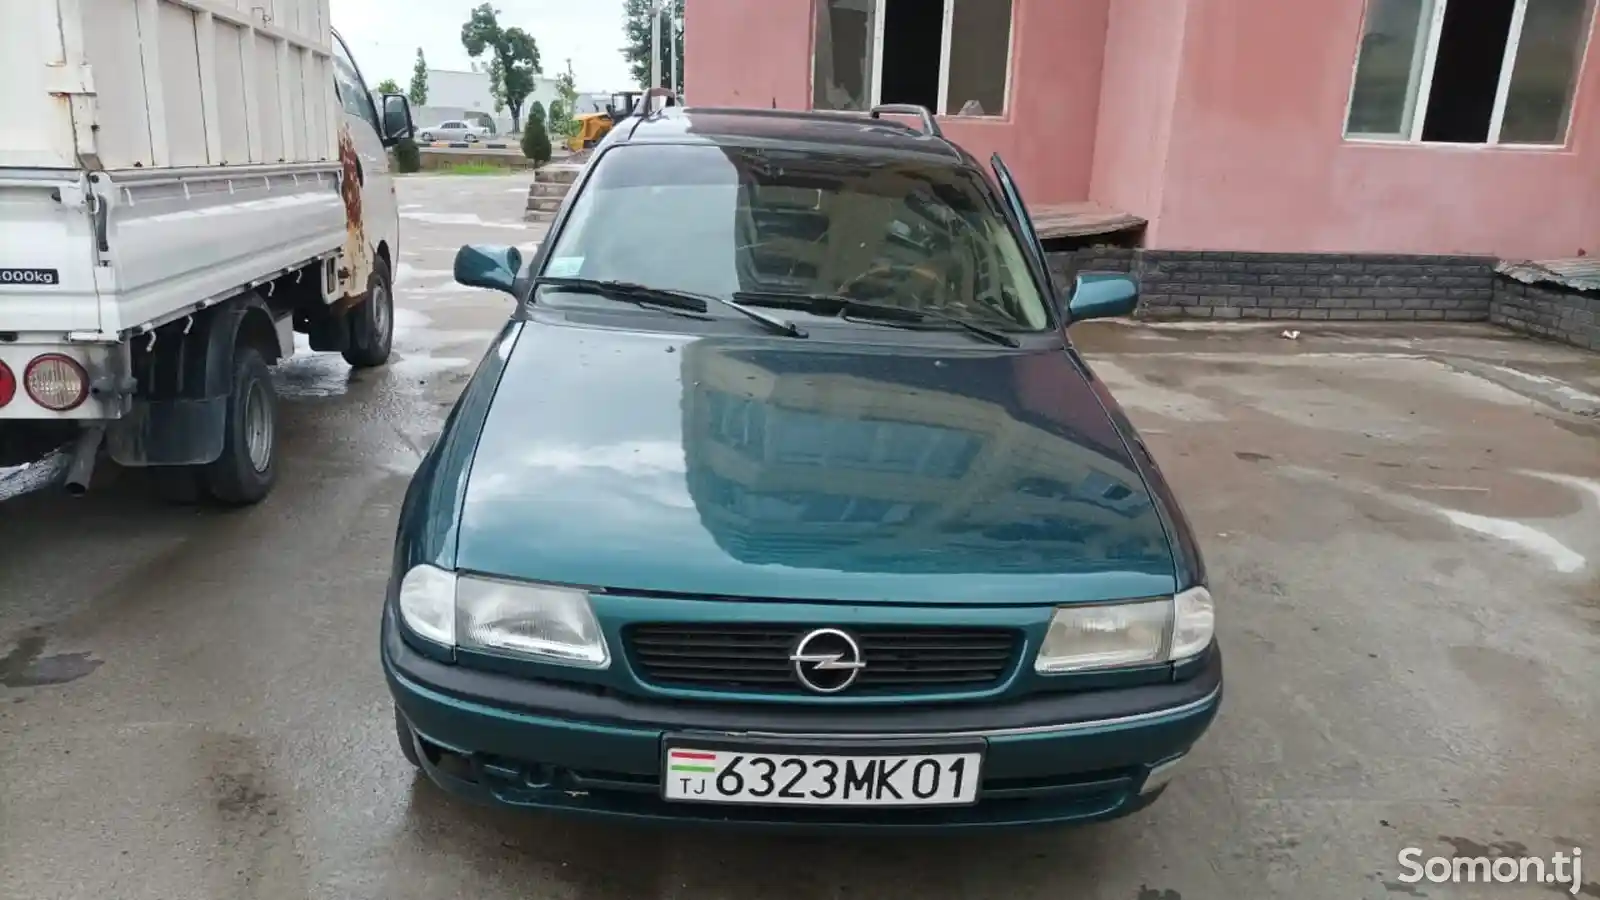 Opel Astra F, 1995-3